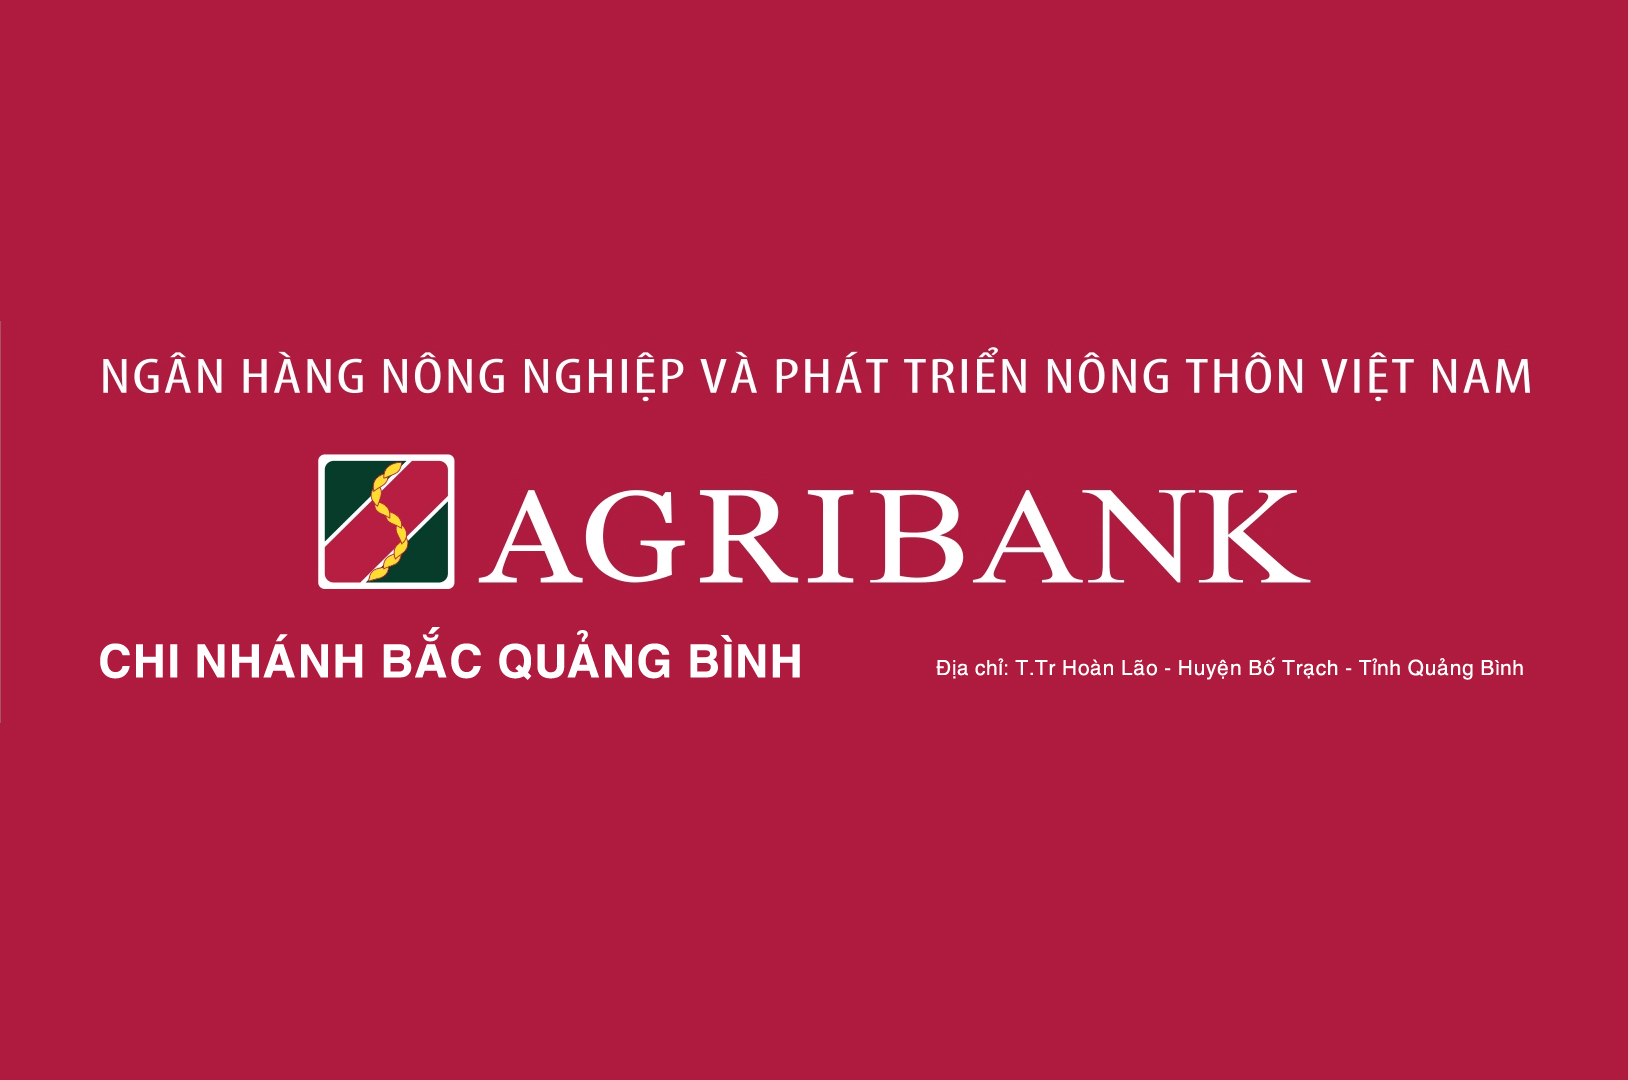 Agribank chi nhánh Bắc Quảng Bình thông báo tuyển dụng